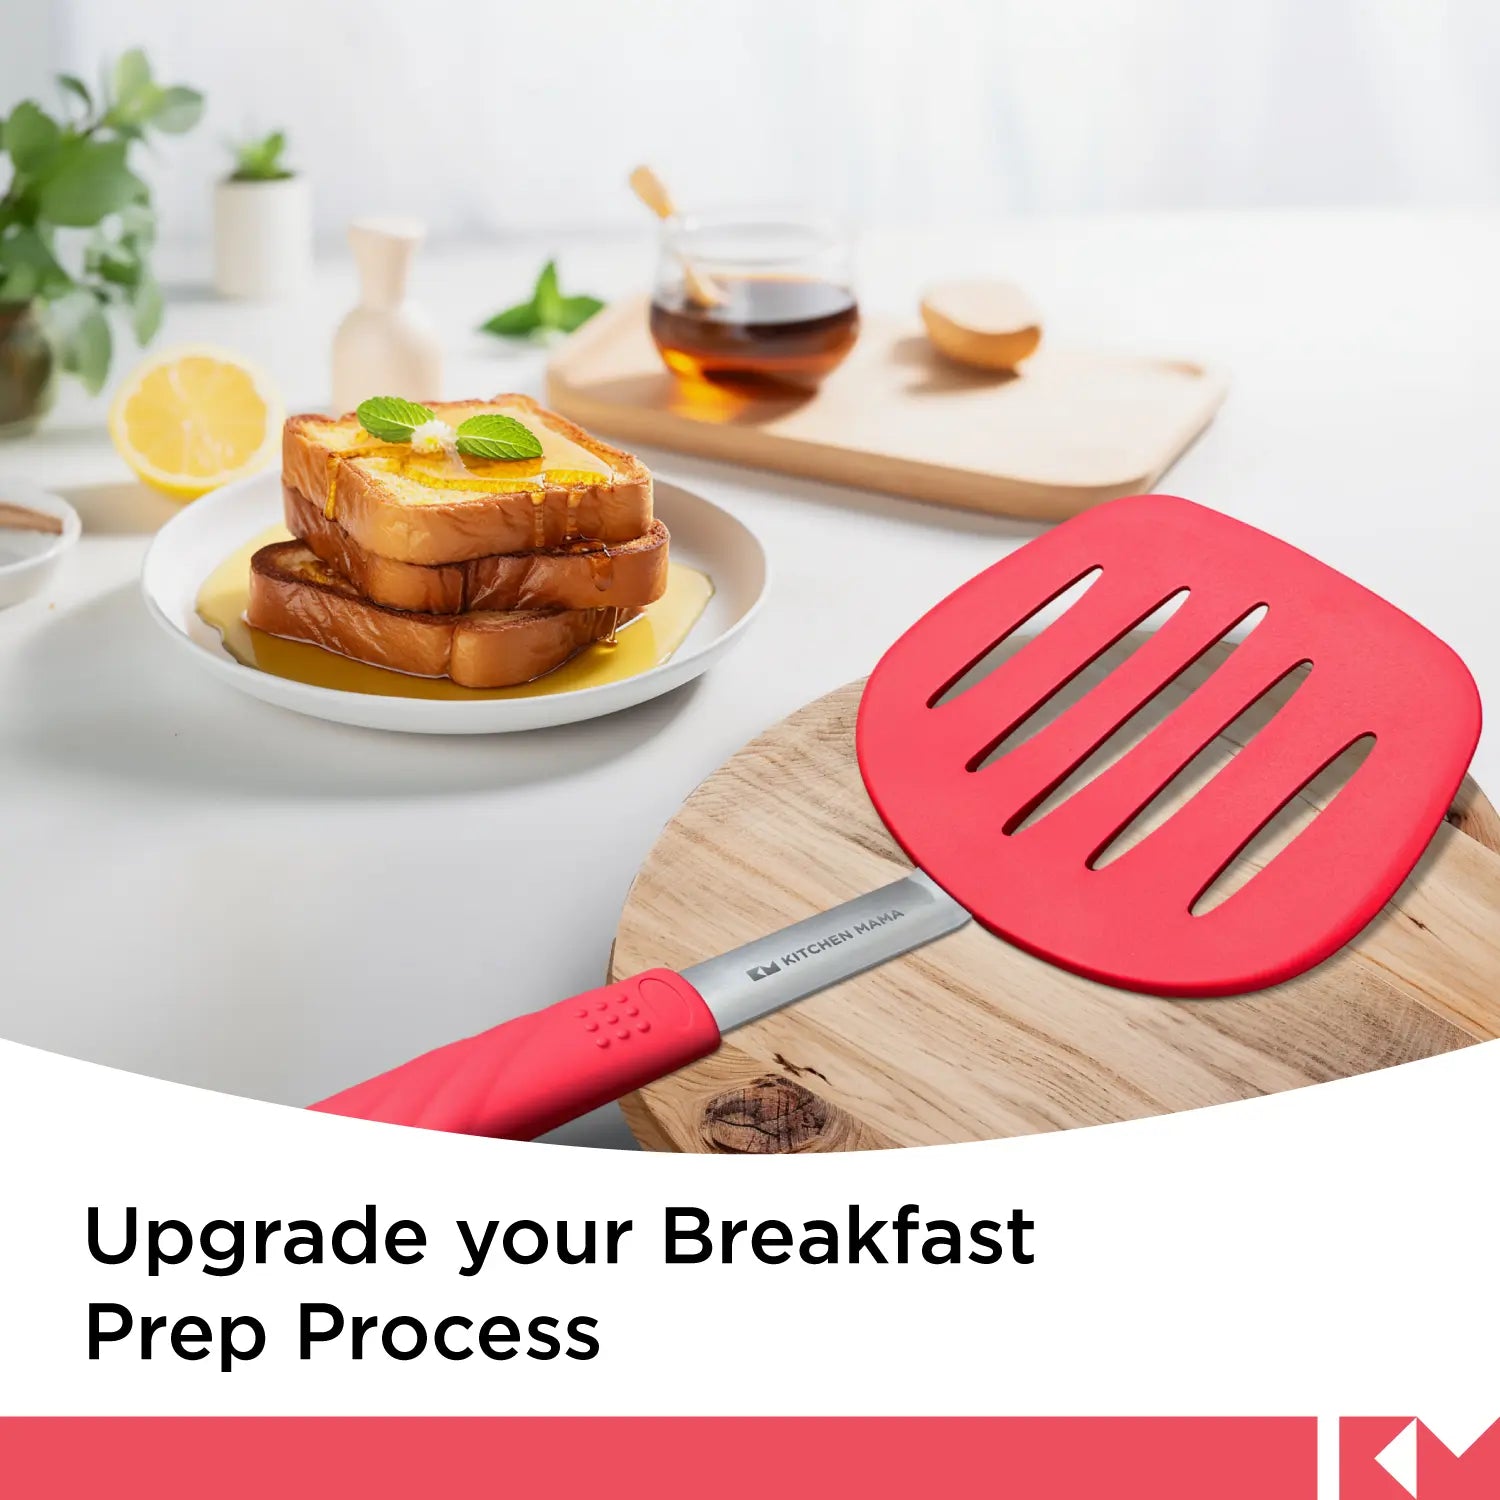 Platin-Silikon-Pfannkuchenwender - hitzebeständiger breiter und geschlitzter Spatel, SP0510-R, verbessert Ihre Frühstücksvorbereitung